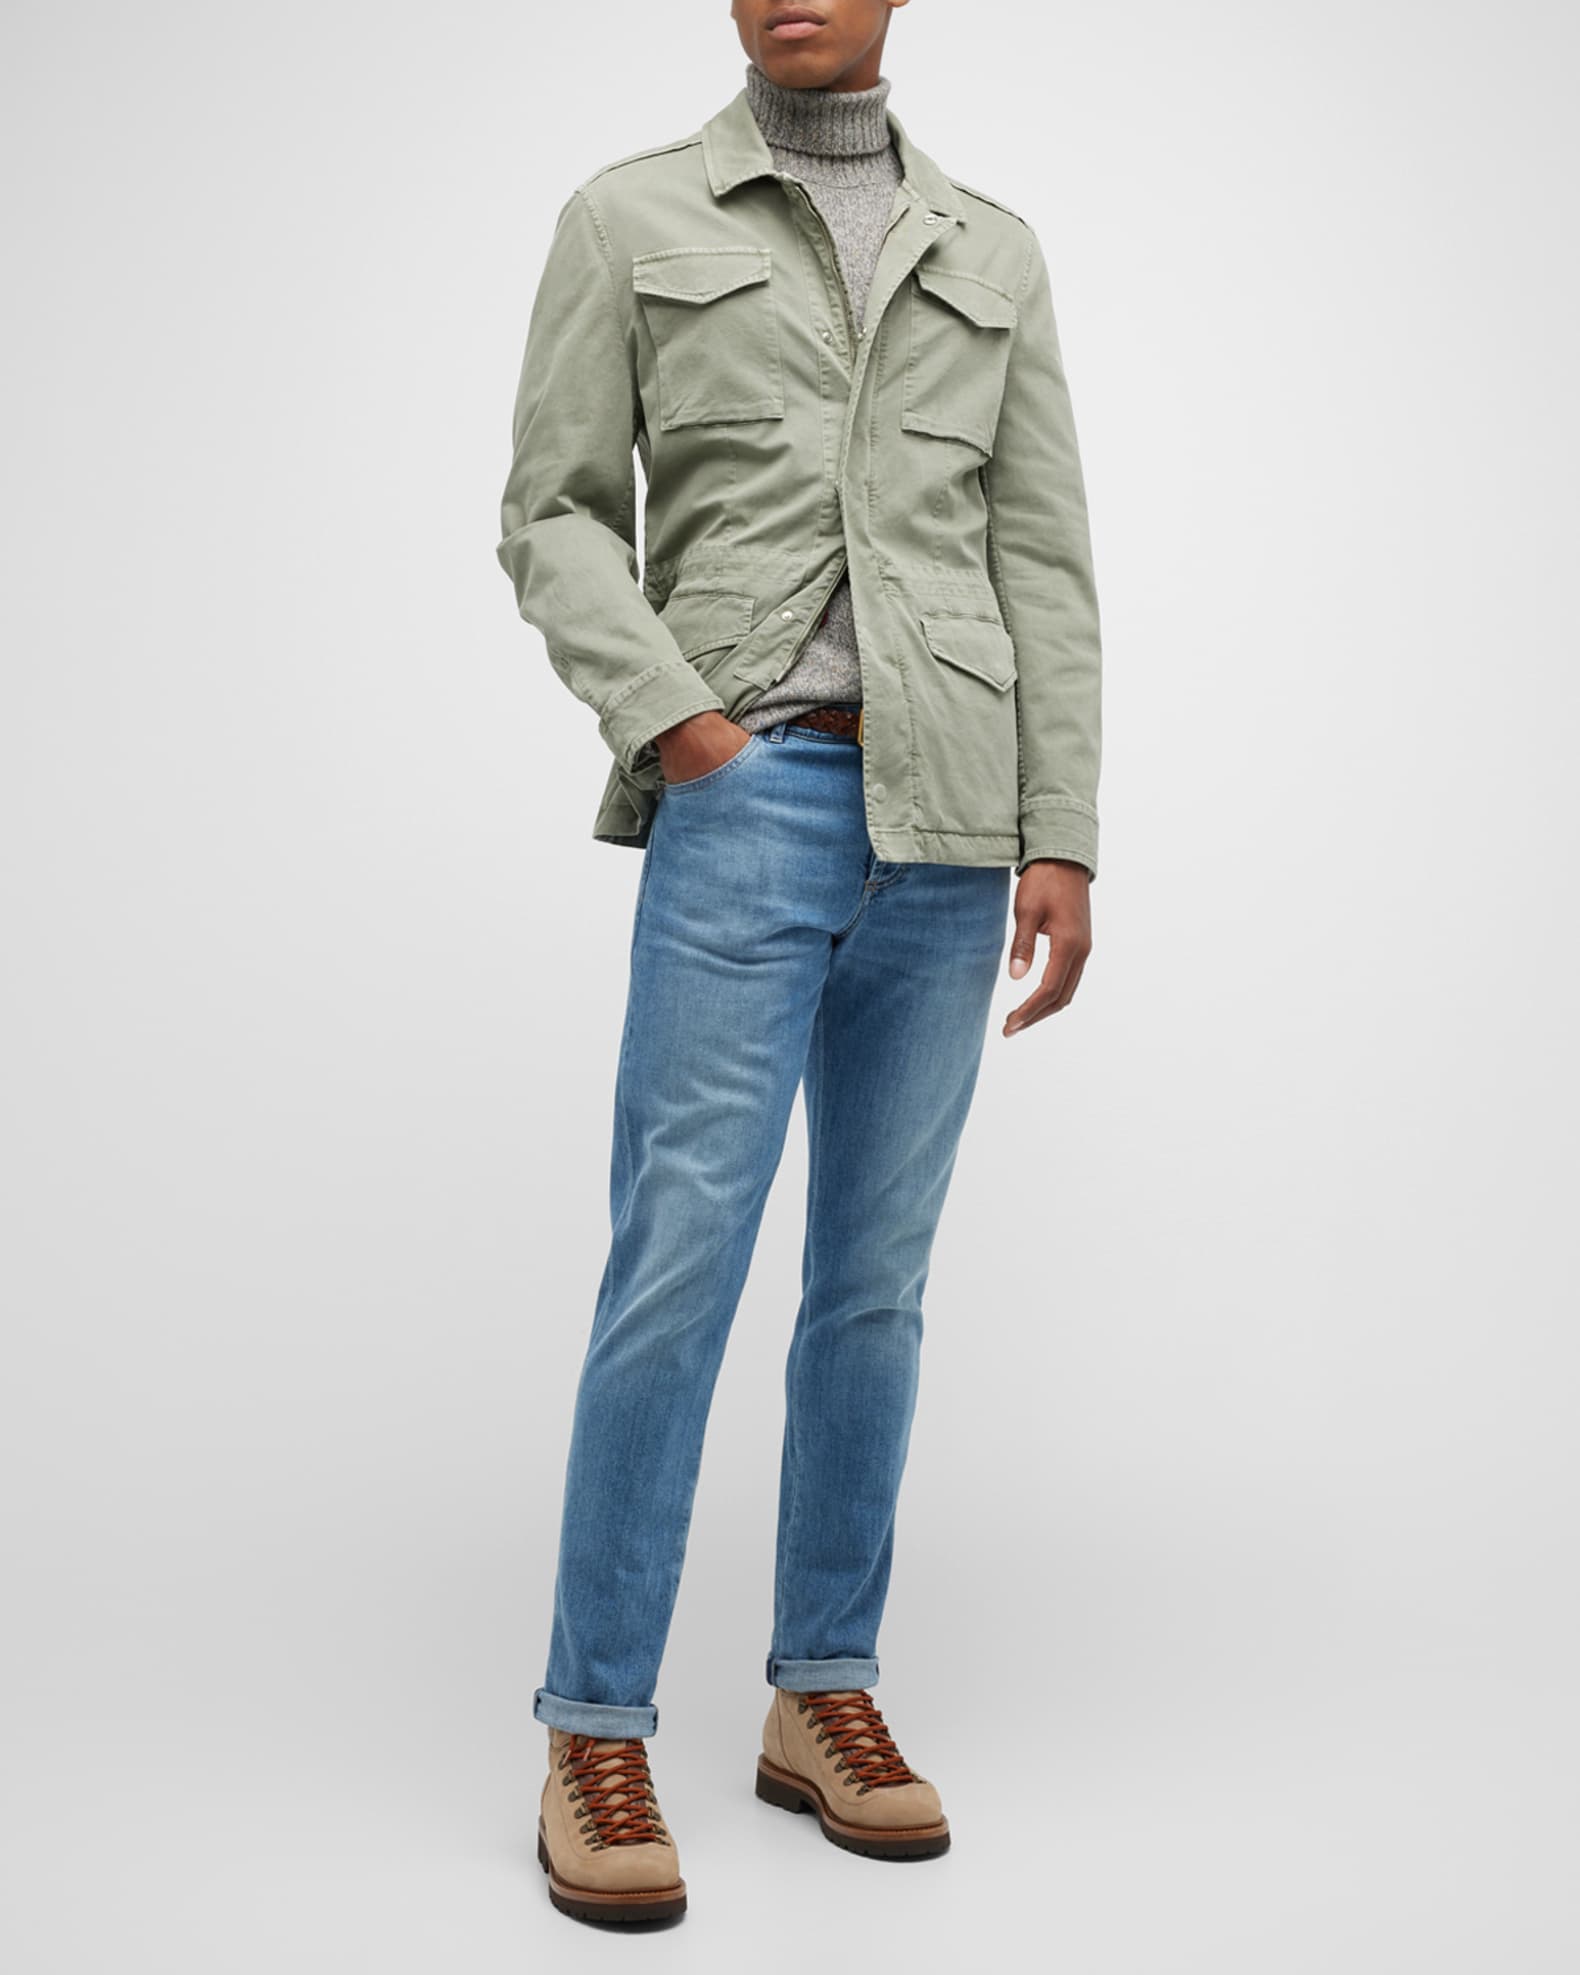 Brunello Cucinelli Men's Cotton-Stretch Field Jacket | Neiman Marcus